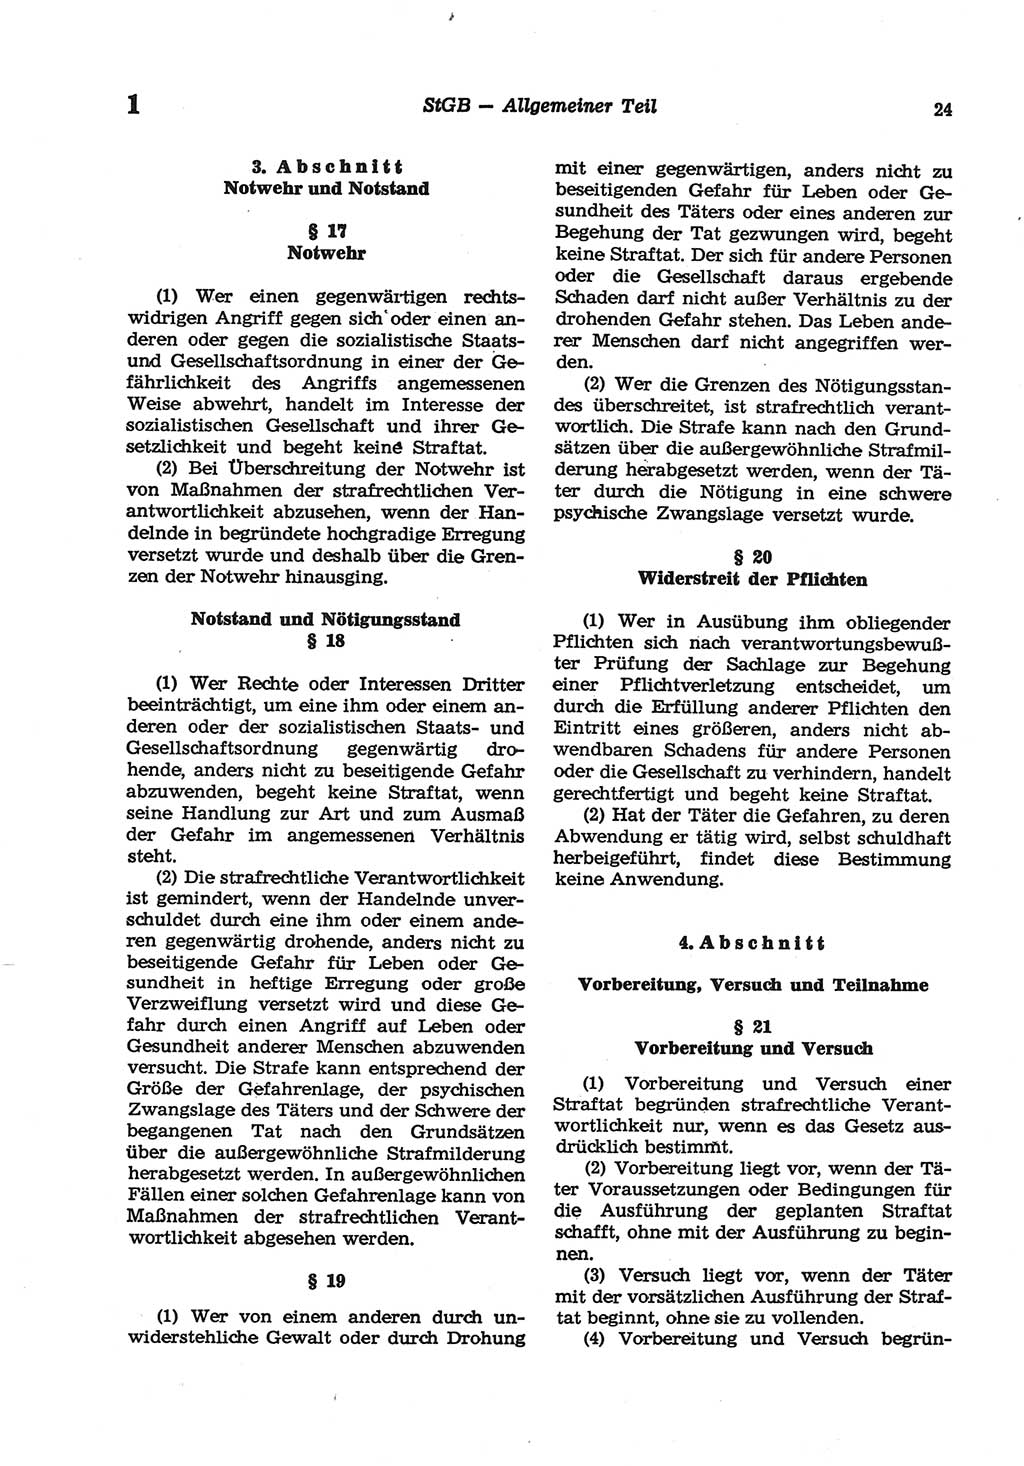 Strafgesetzbuch (StGB) der Deutschen Demokratischen Republik (DDR) und angrenzende Gesetze und Bestimmungen 1977, Seite 24 (StGB DDR Ges. Best. 1977, S. 24)